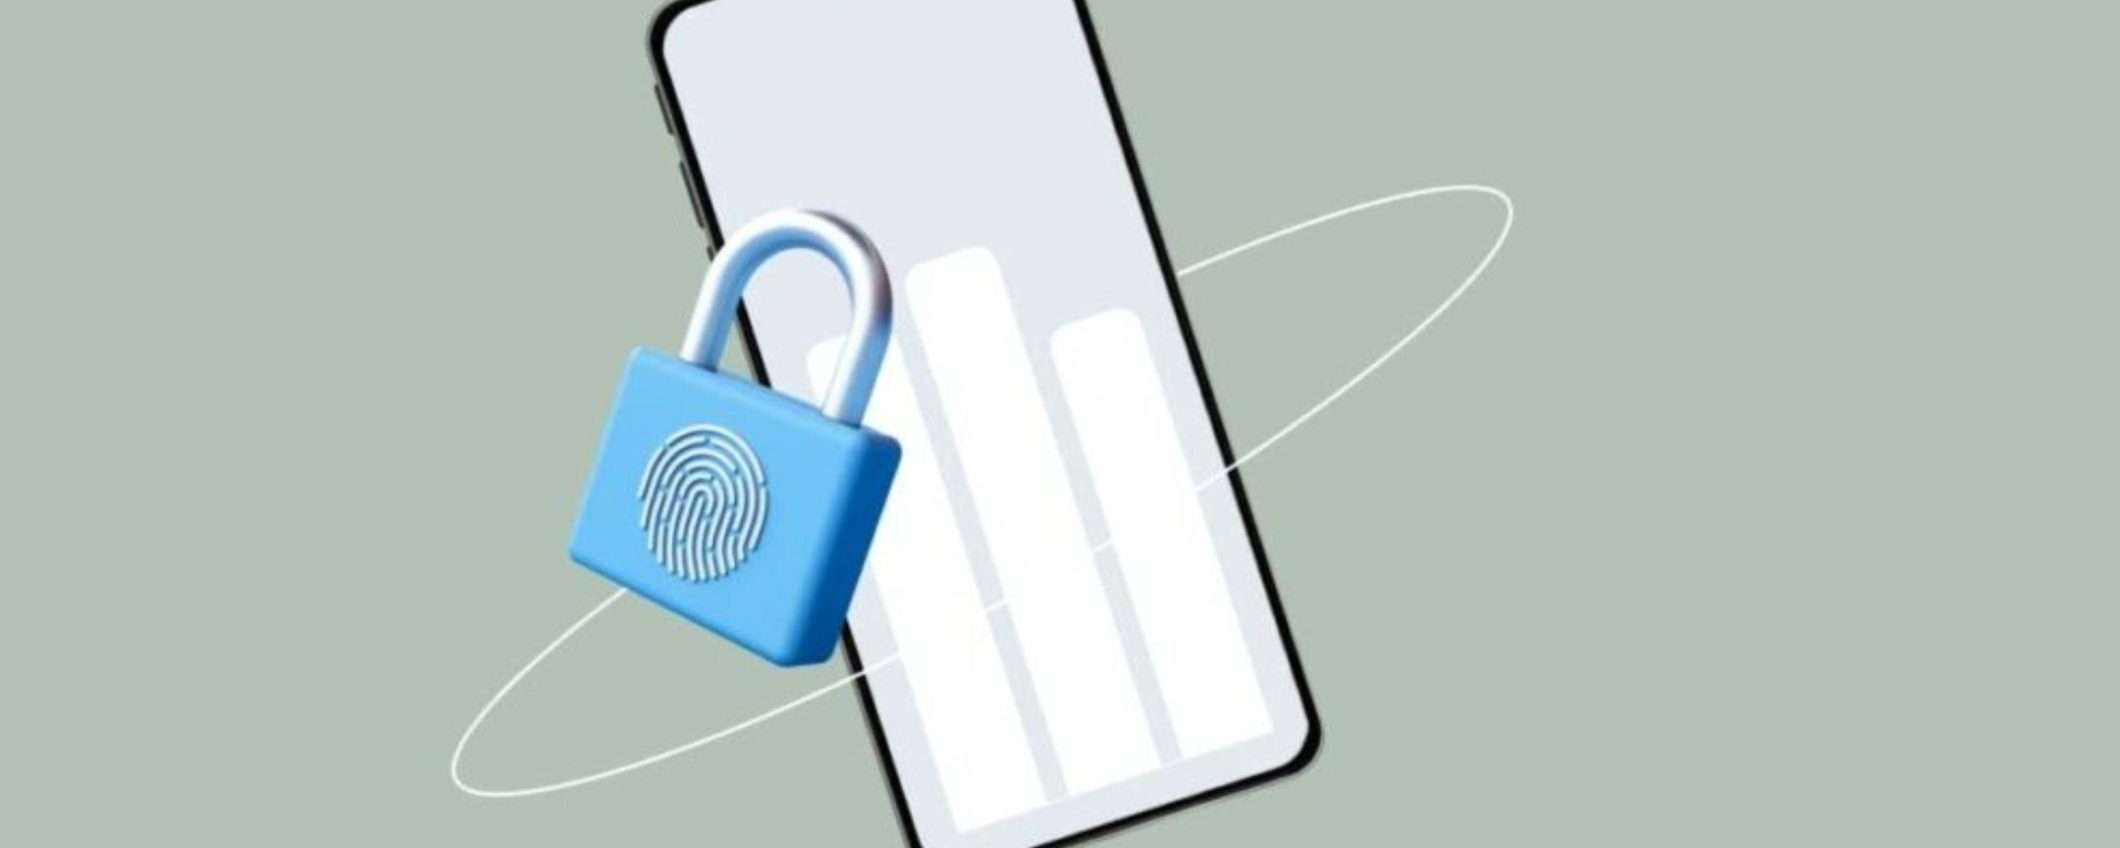 Proteggi i tuoi dati personali online con Incogni